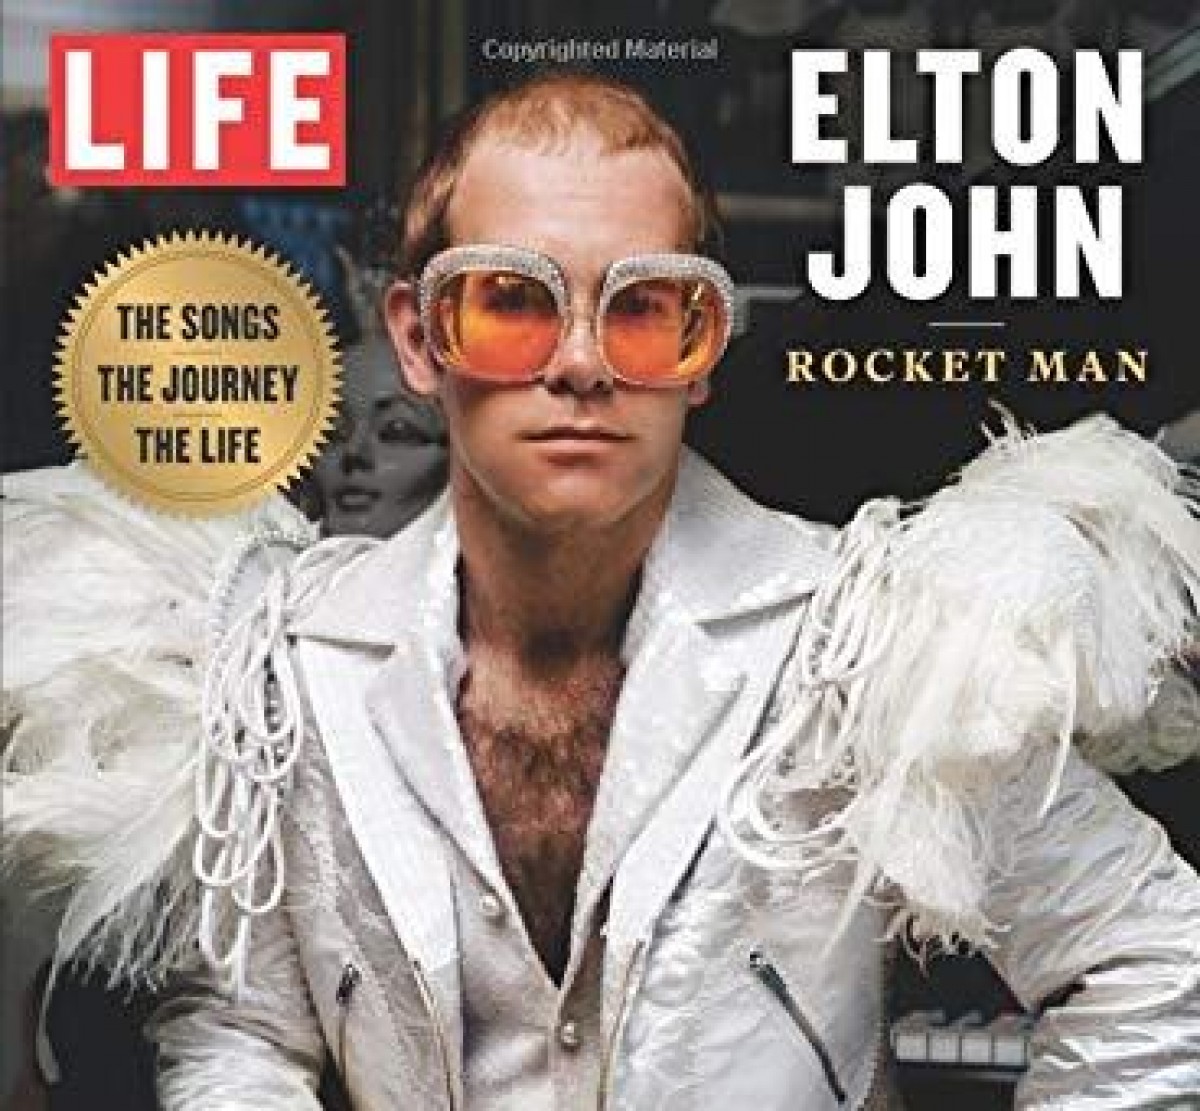 Elton John: (Algunes) cançons immortals